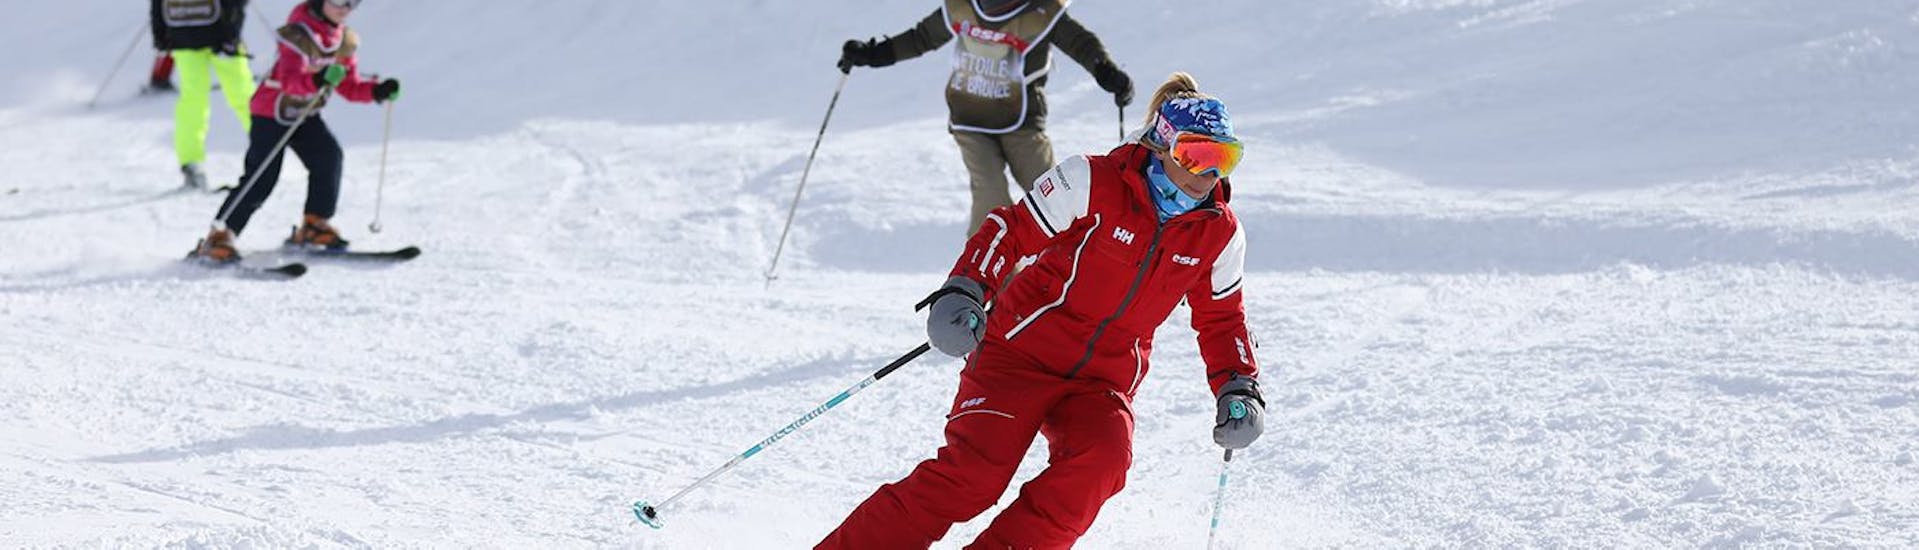 Une monitrice de l'ESF Abriès Haut-Guil guide des élèves sur les pistes pendant des cours de ski enfants.